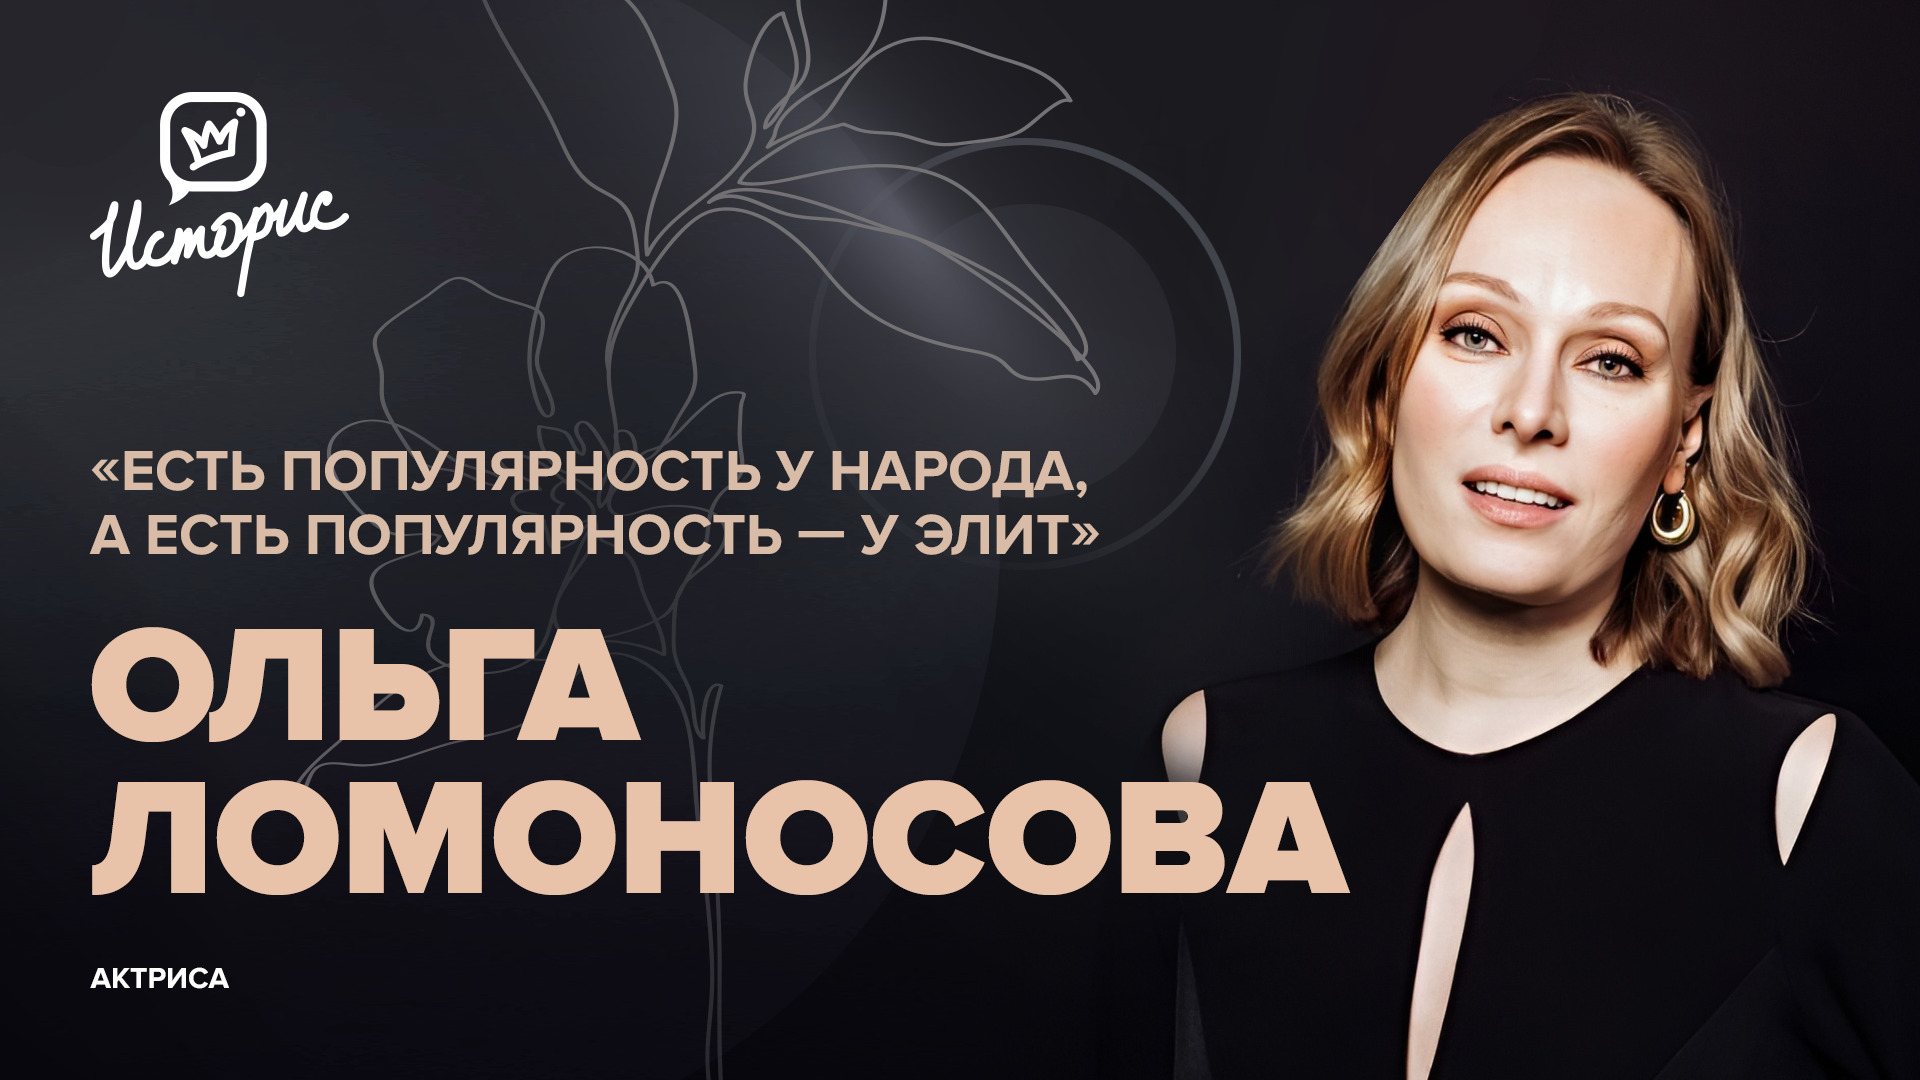 Ольга Ломоносова — о современном театре и кино, спектакле «Месяц в деревне» и новых проектах